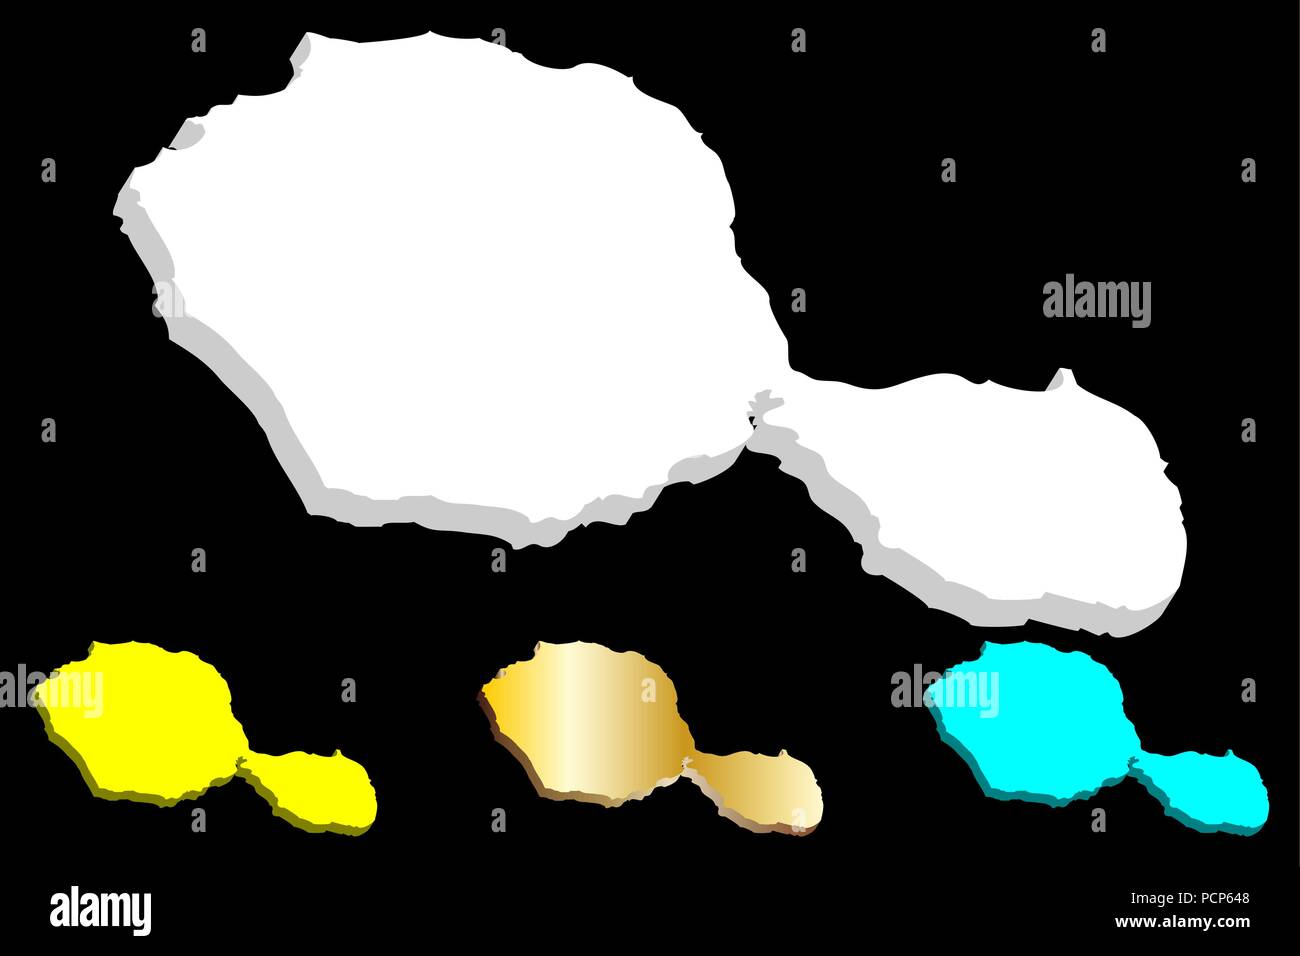 3D de la carte de Tahiti (Otaheite) - blanc, jaune, bleu et or - vector illustration Illustration de Vecteur